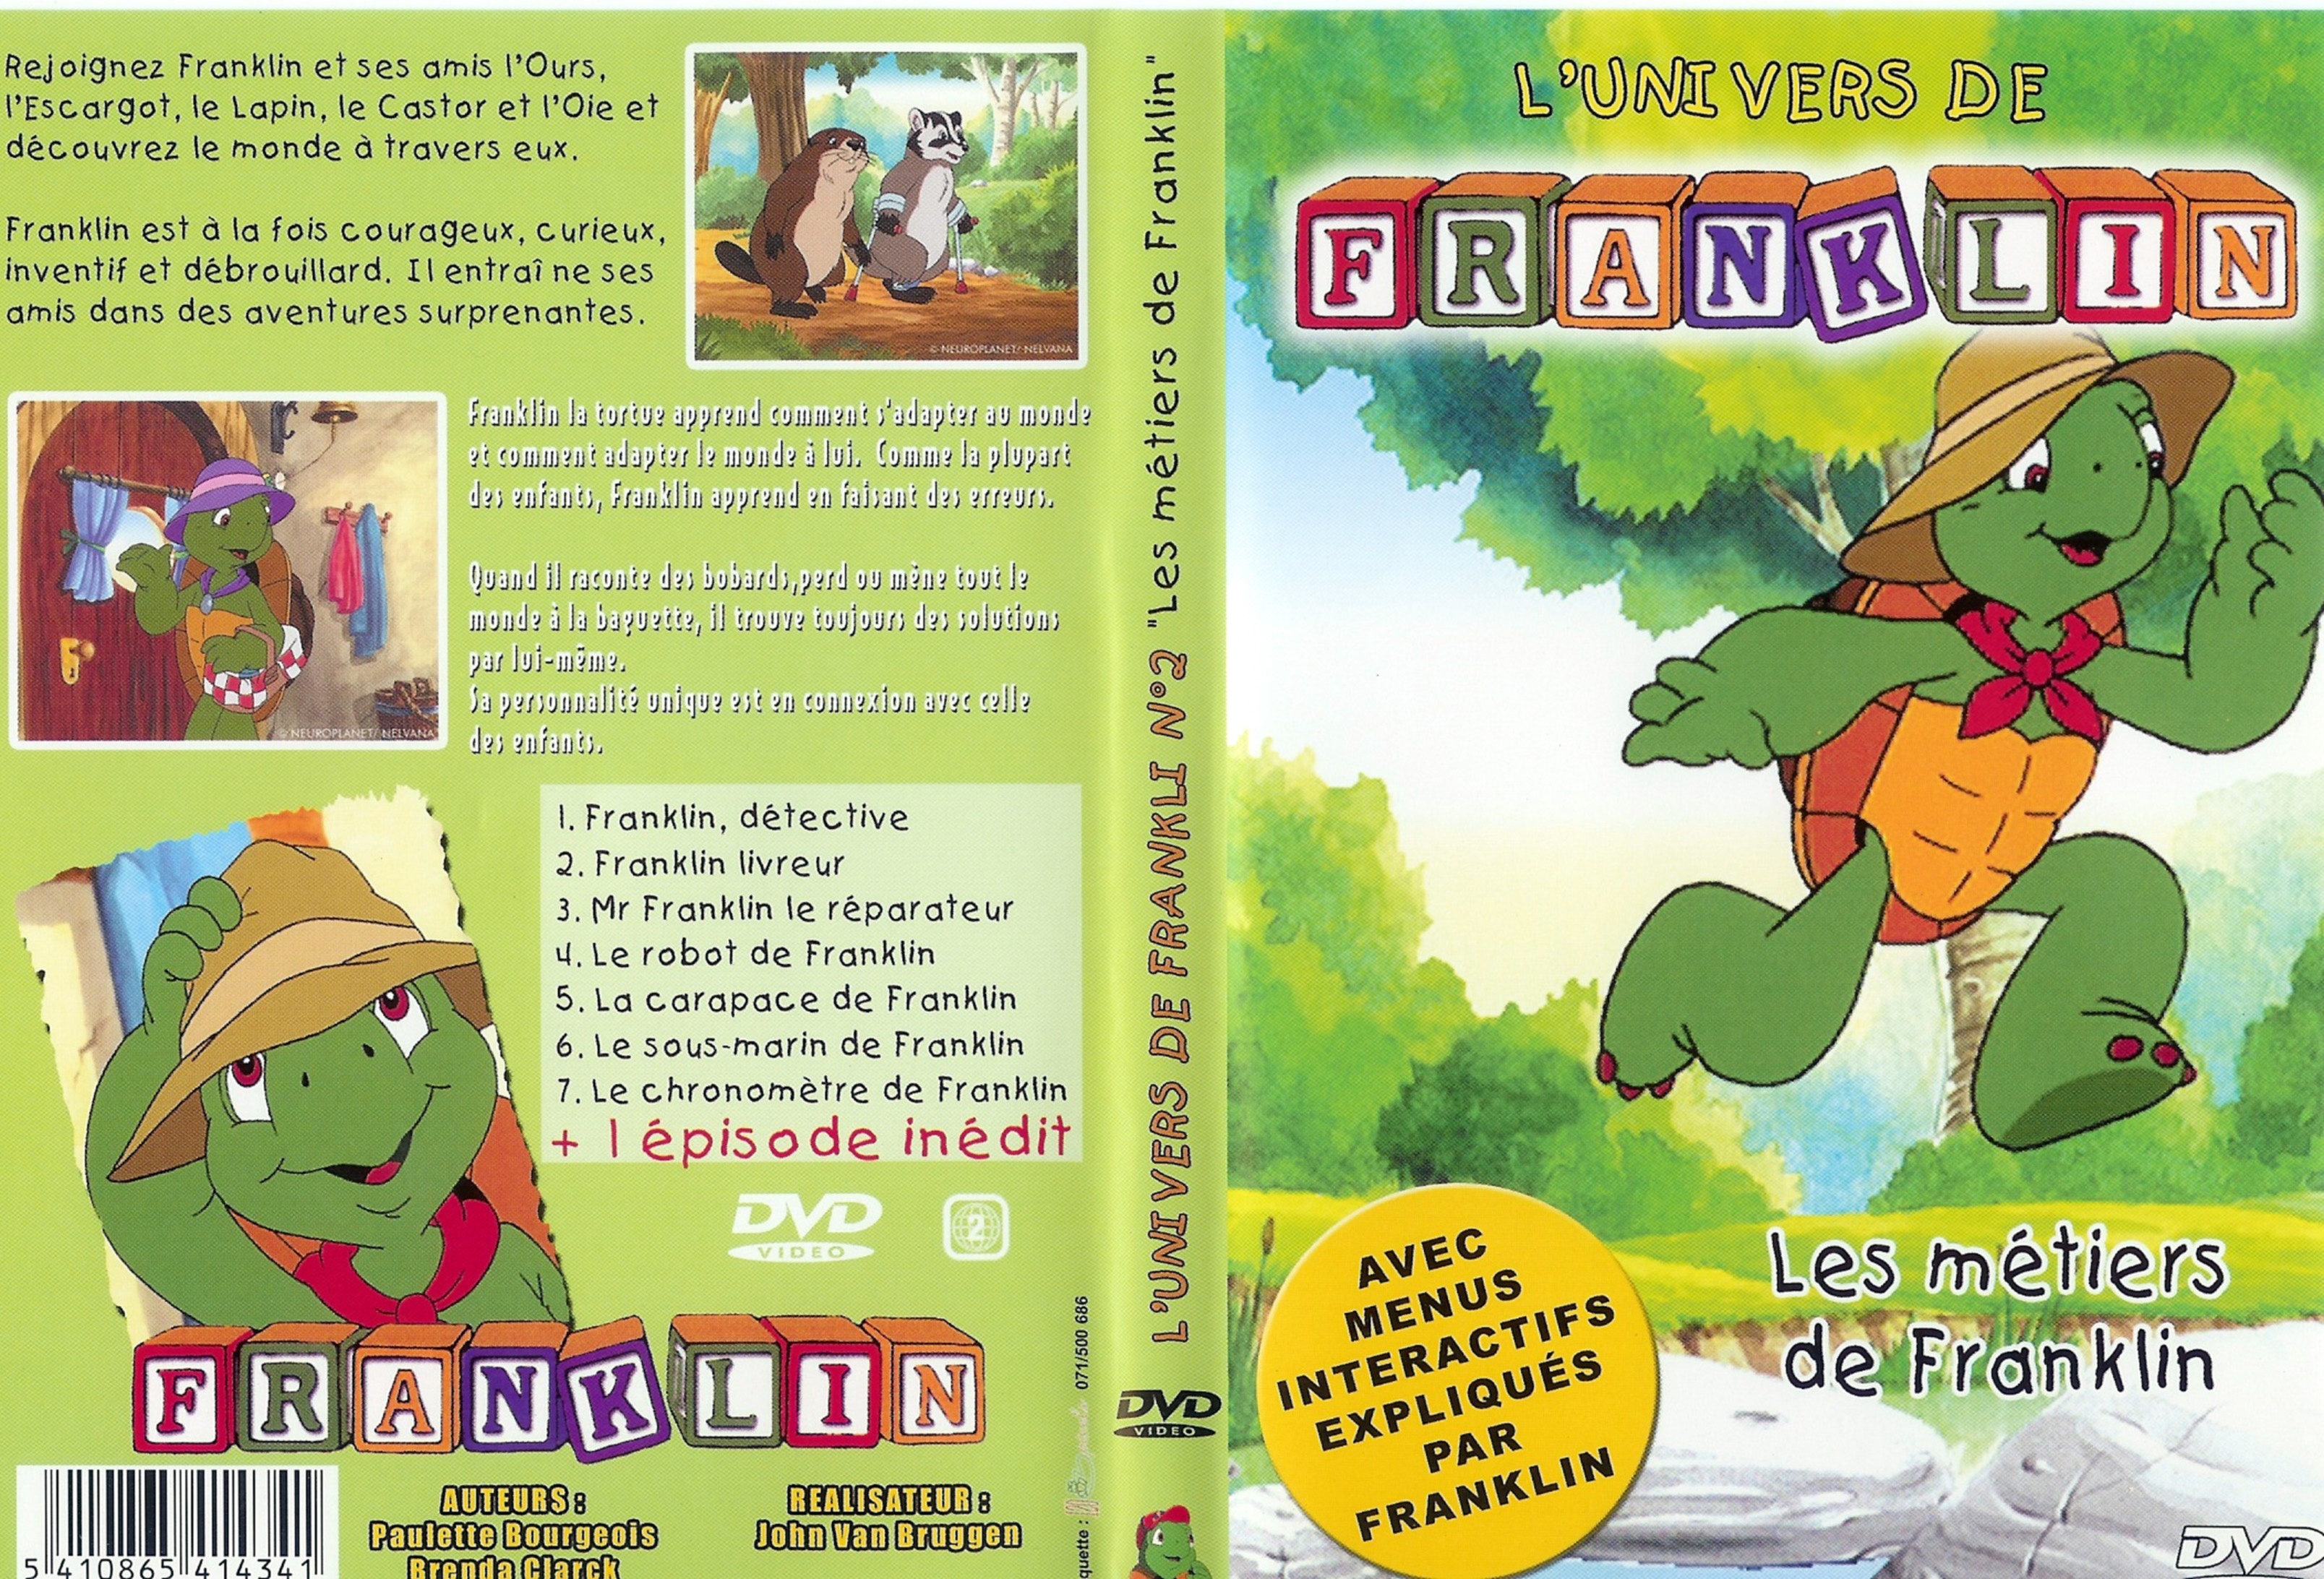 Jaquette DVD Franklin les metiers de franklin